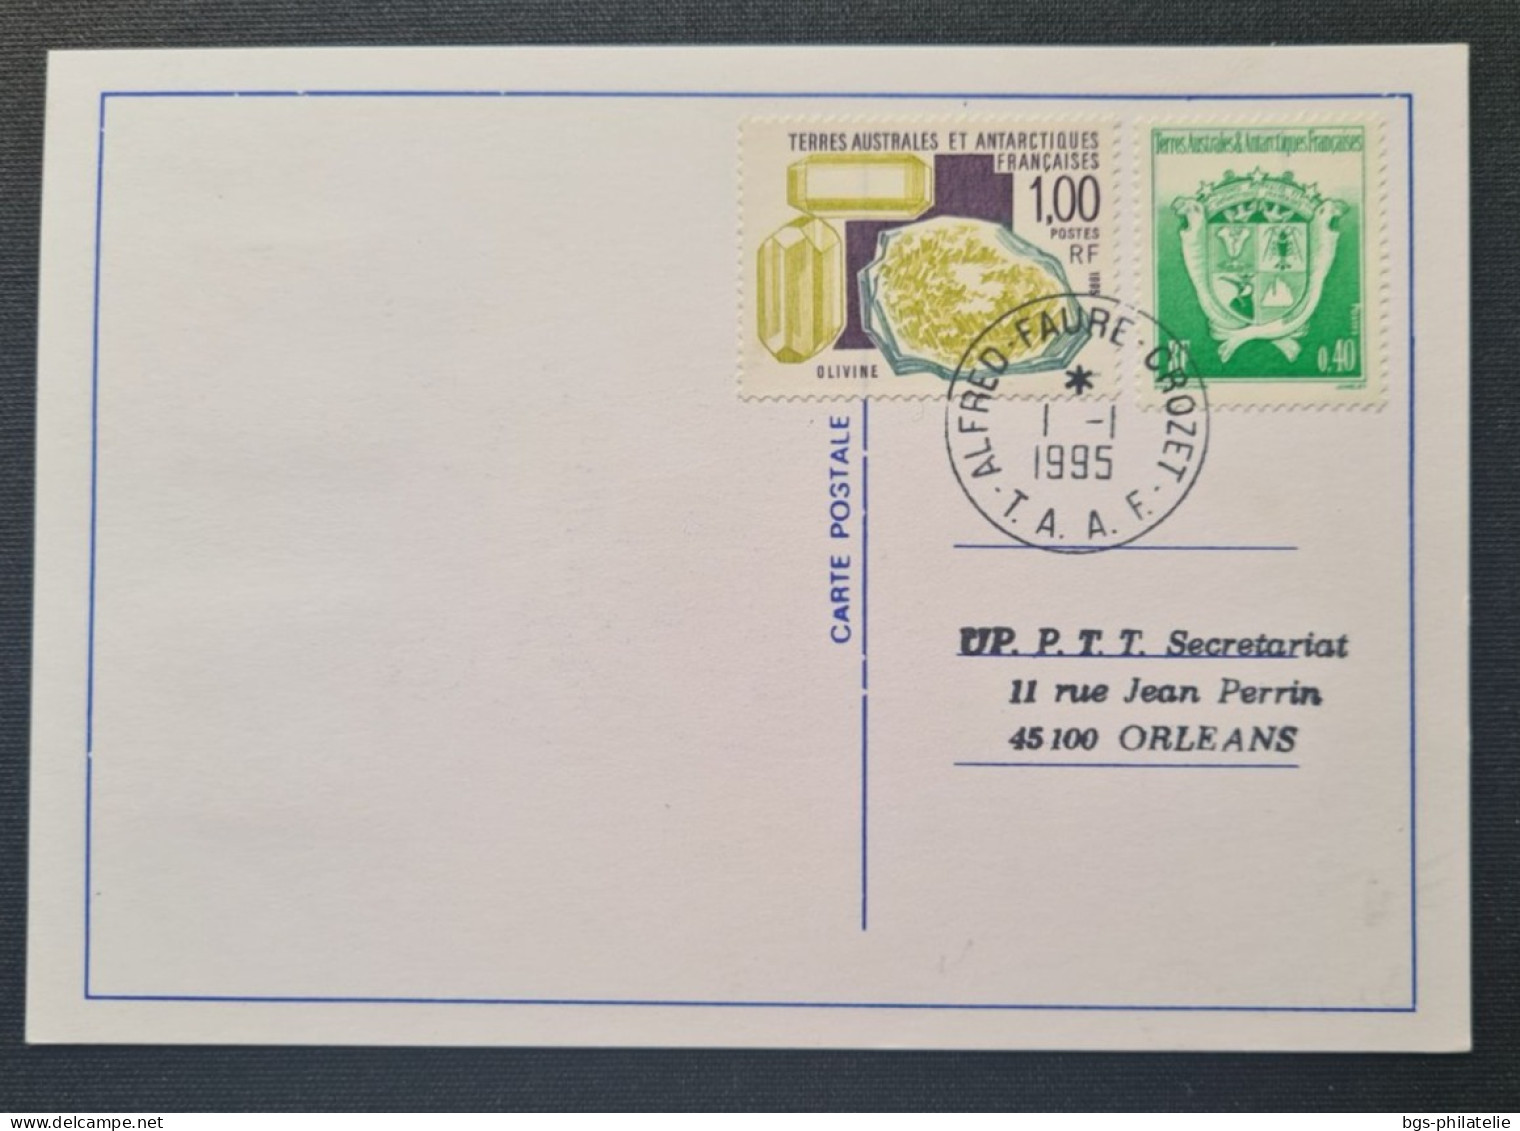 TAAF, Timbres Numéros 194×2 Et 184 + 195 Au Verso  Oblitérés De CROZET Le 1/1/1995. - Storia Postale